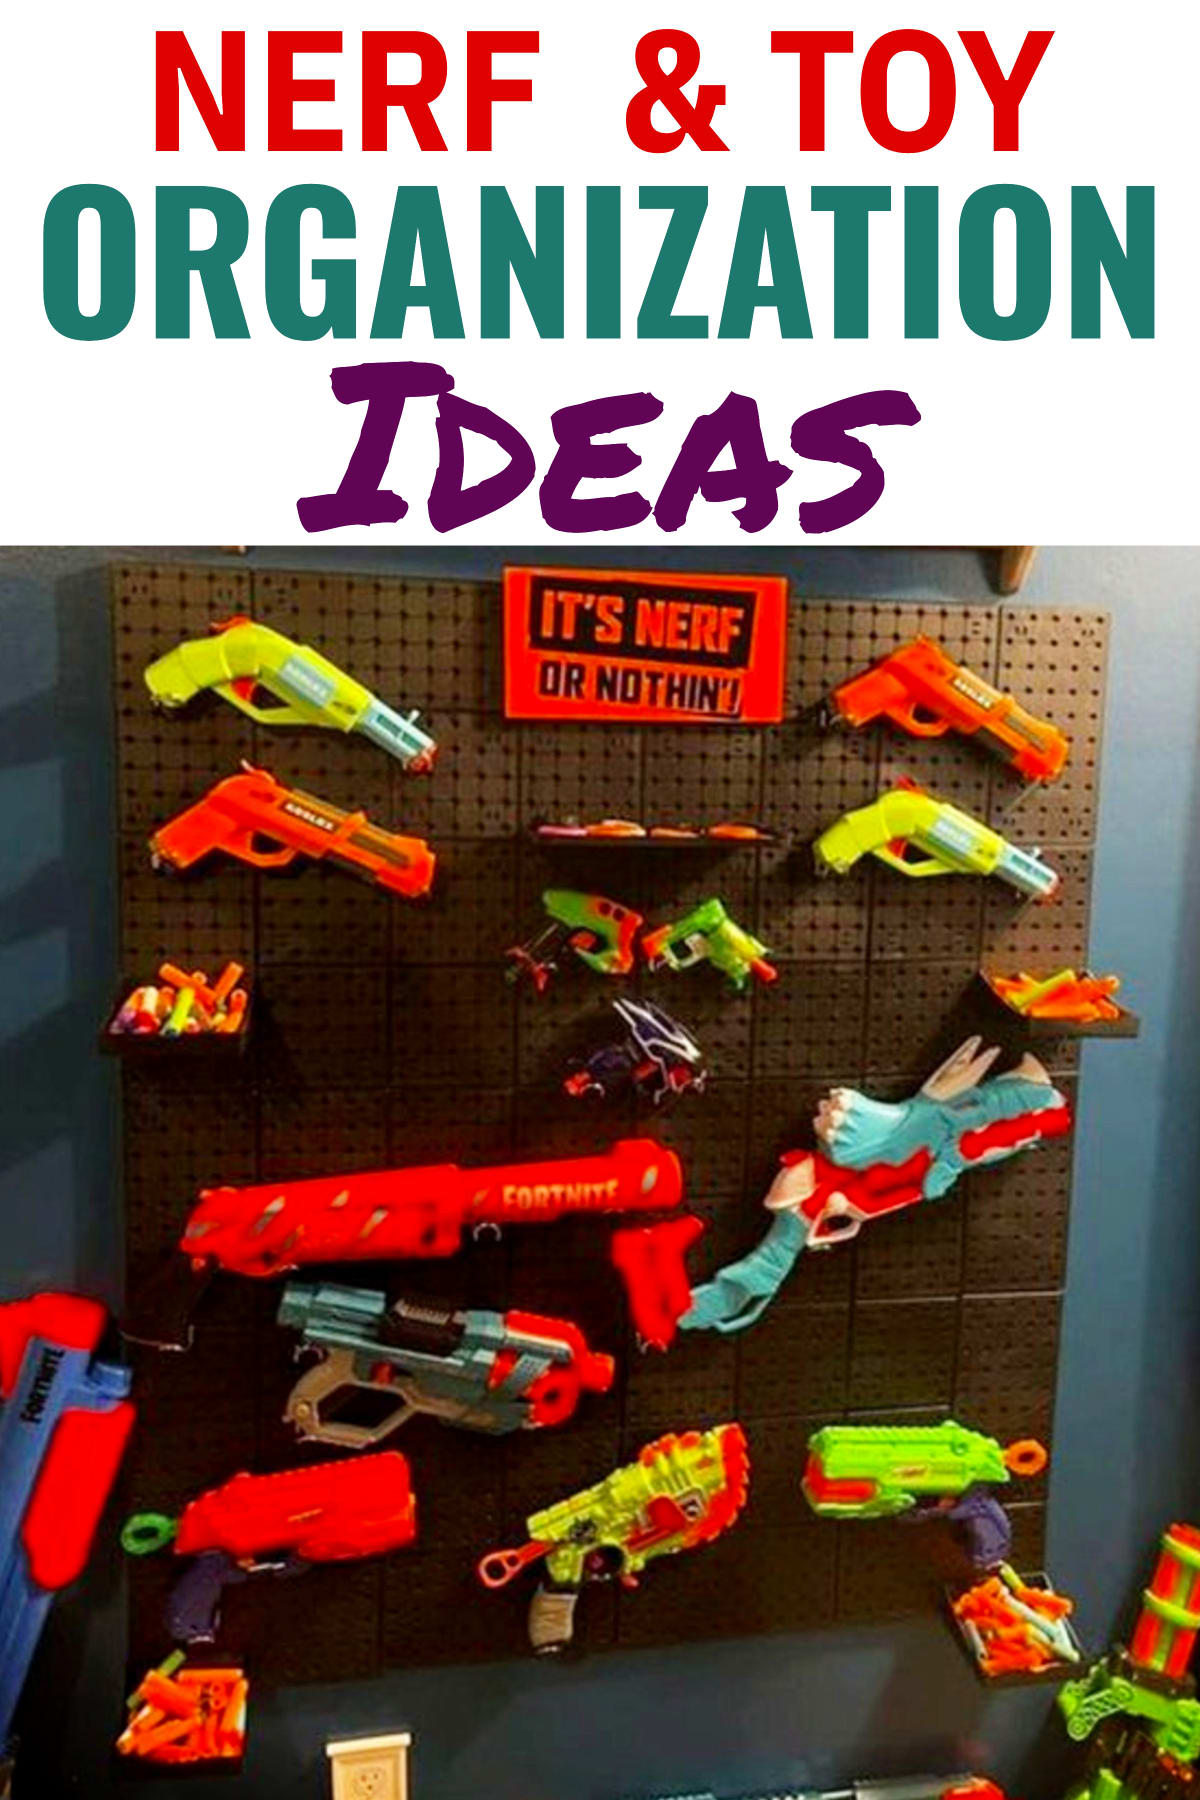 How To Organize NERF Toys - NERF storage ideas